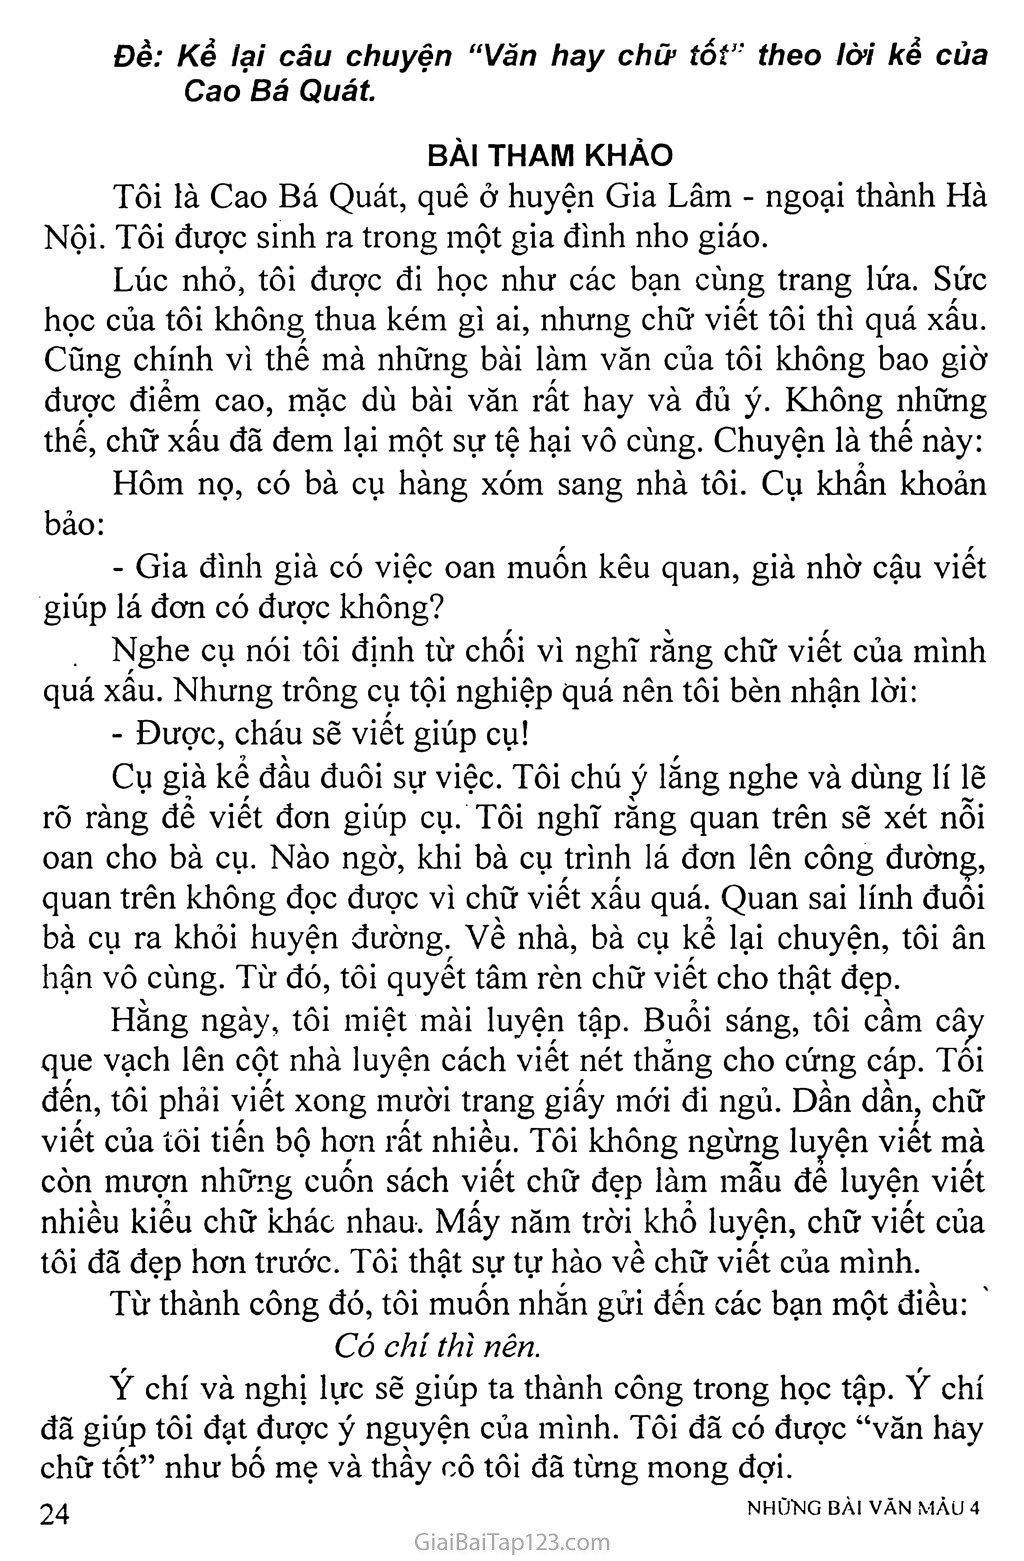 Kể lại câu chuyện “Văn hay chữ tốt” theo lời kể của Cao Bá Quát trang 1